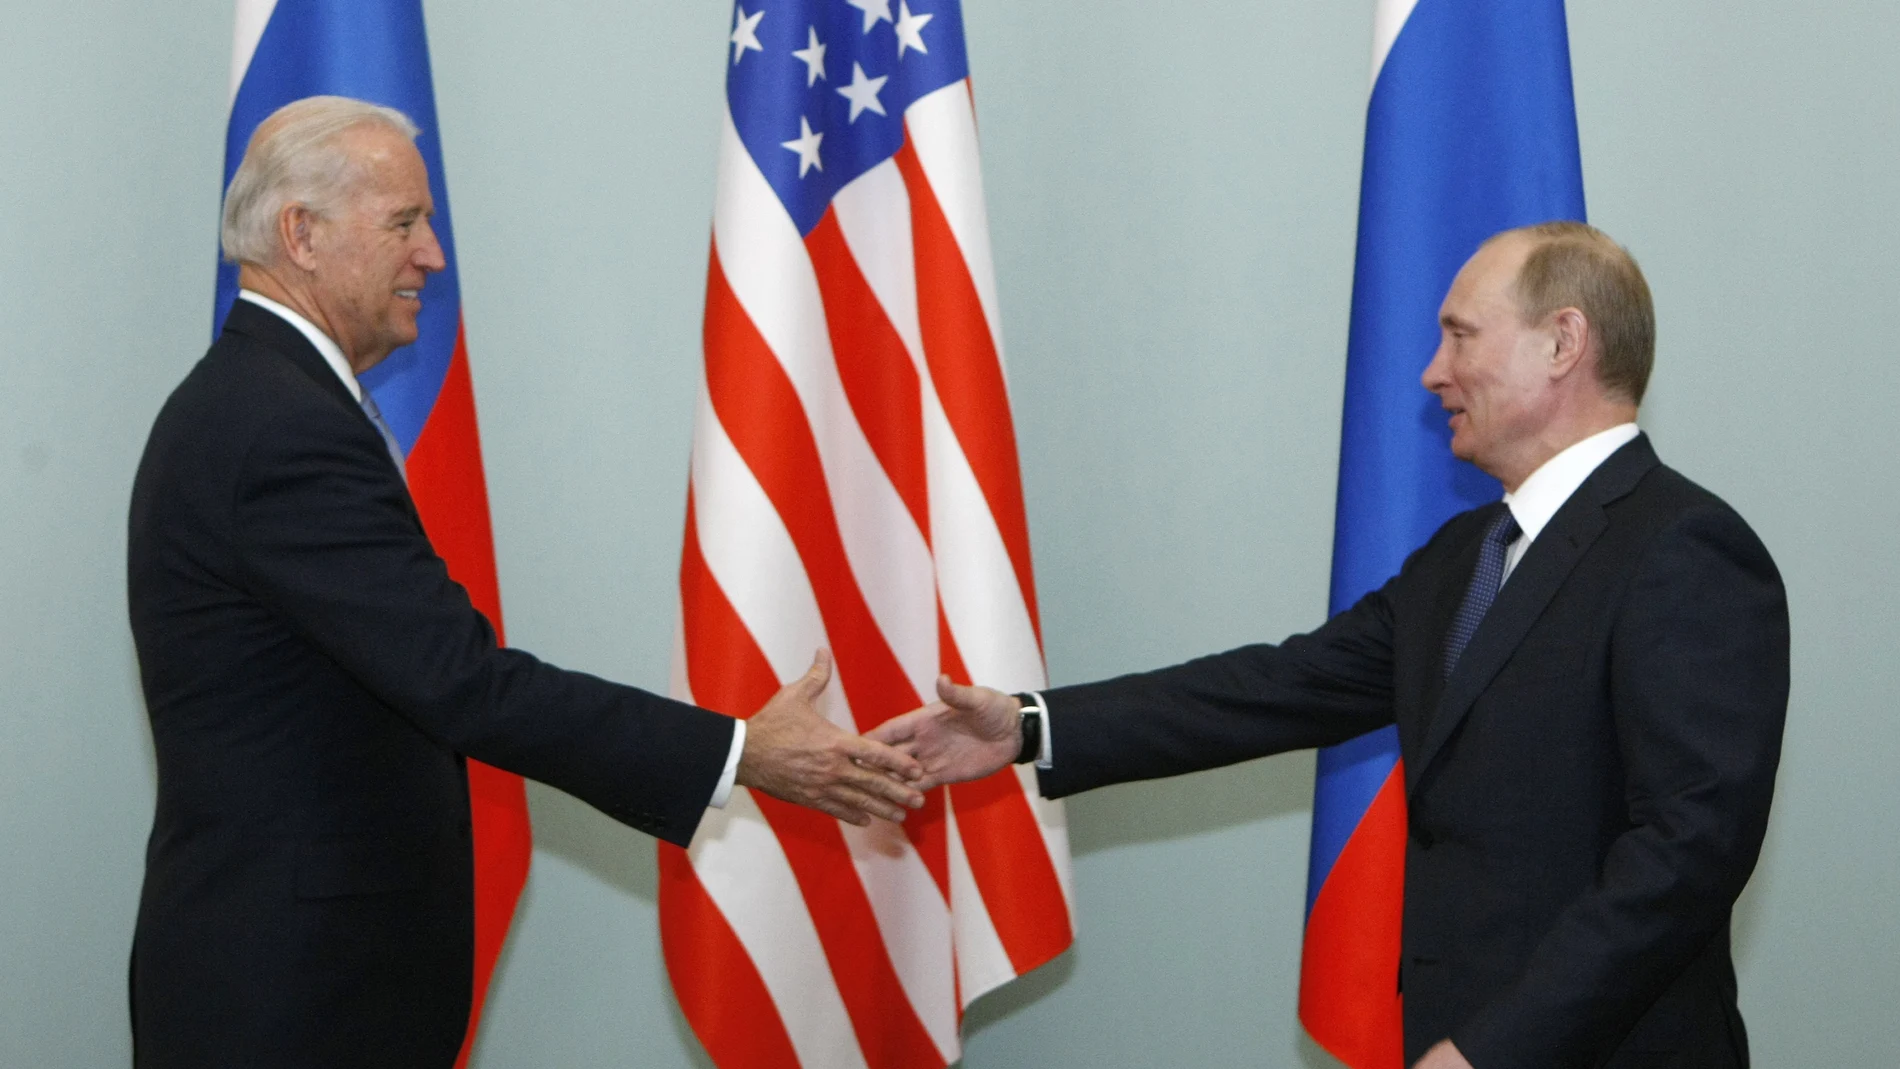 El entonces vicepresidente Joe Biden y Vladimir Putin en Moscú en 2011